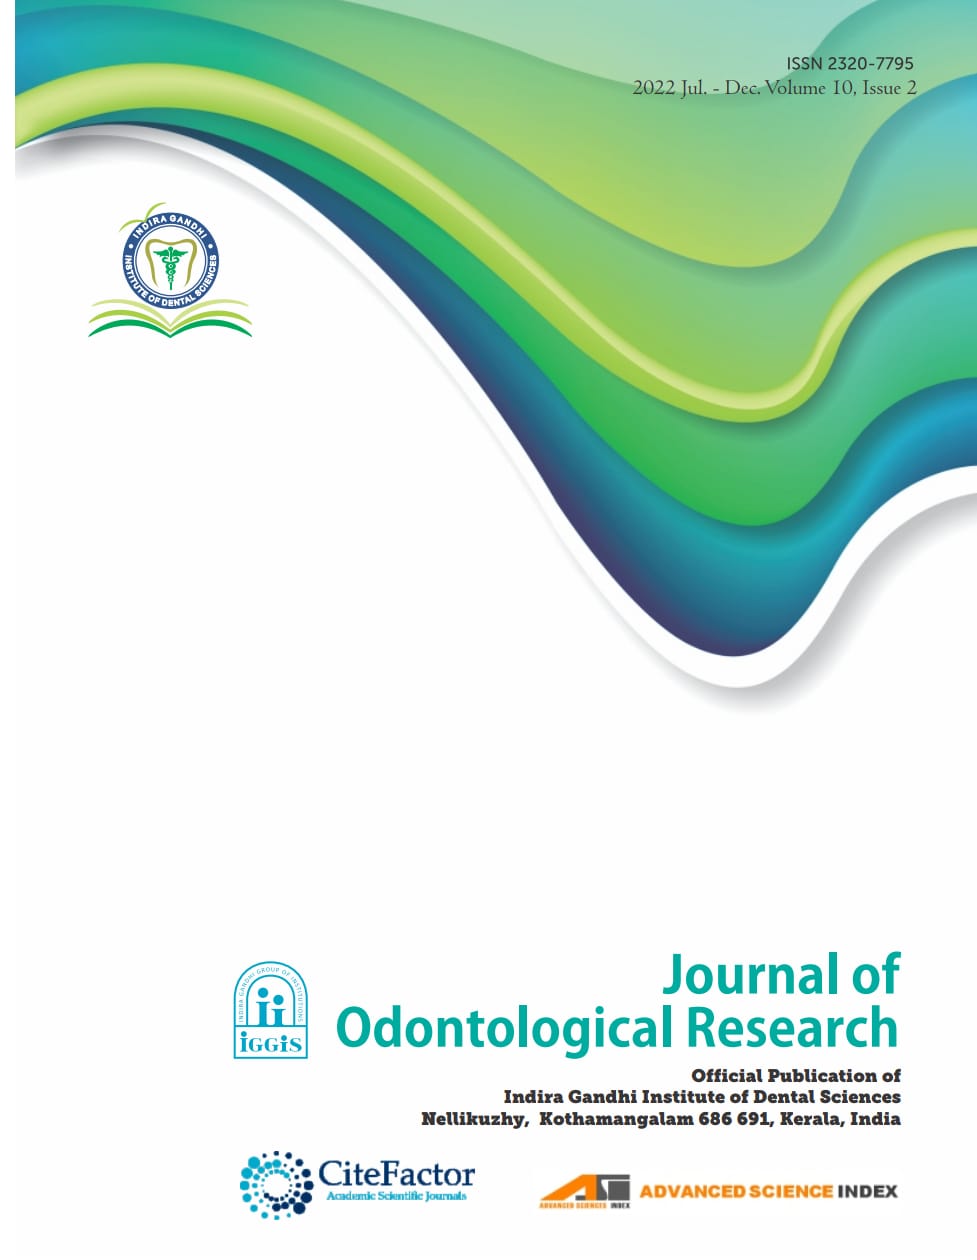 J Odontol Res 2022 Volume 10 Issue 2